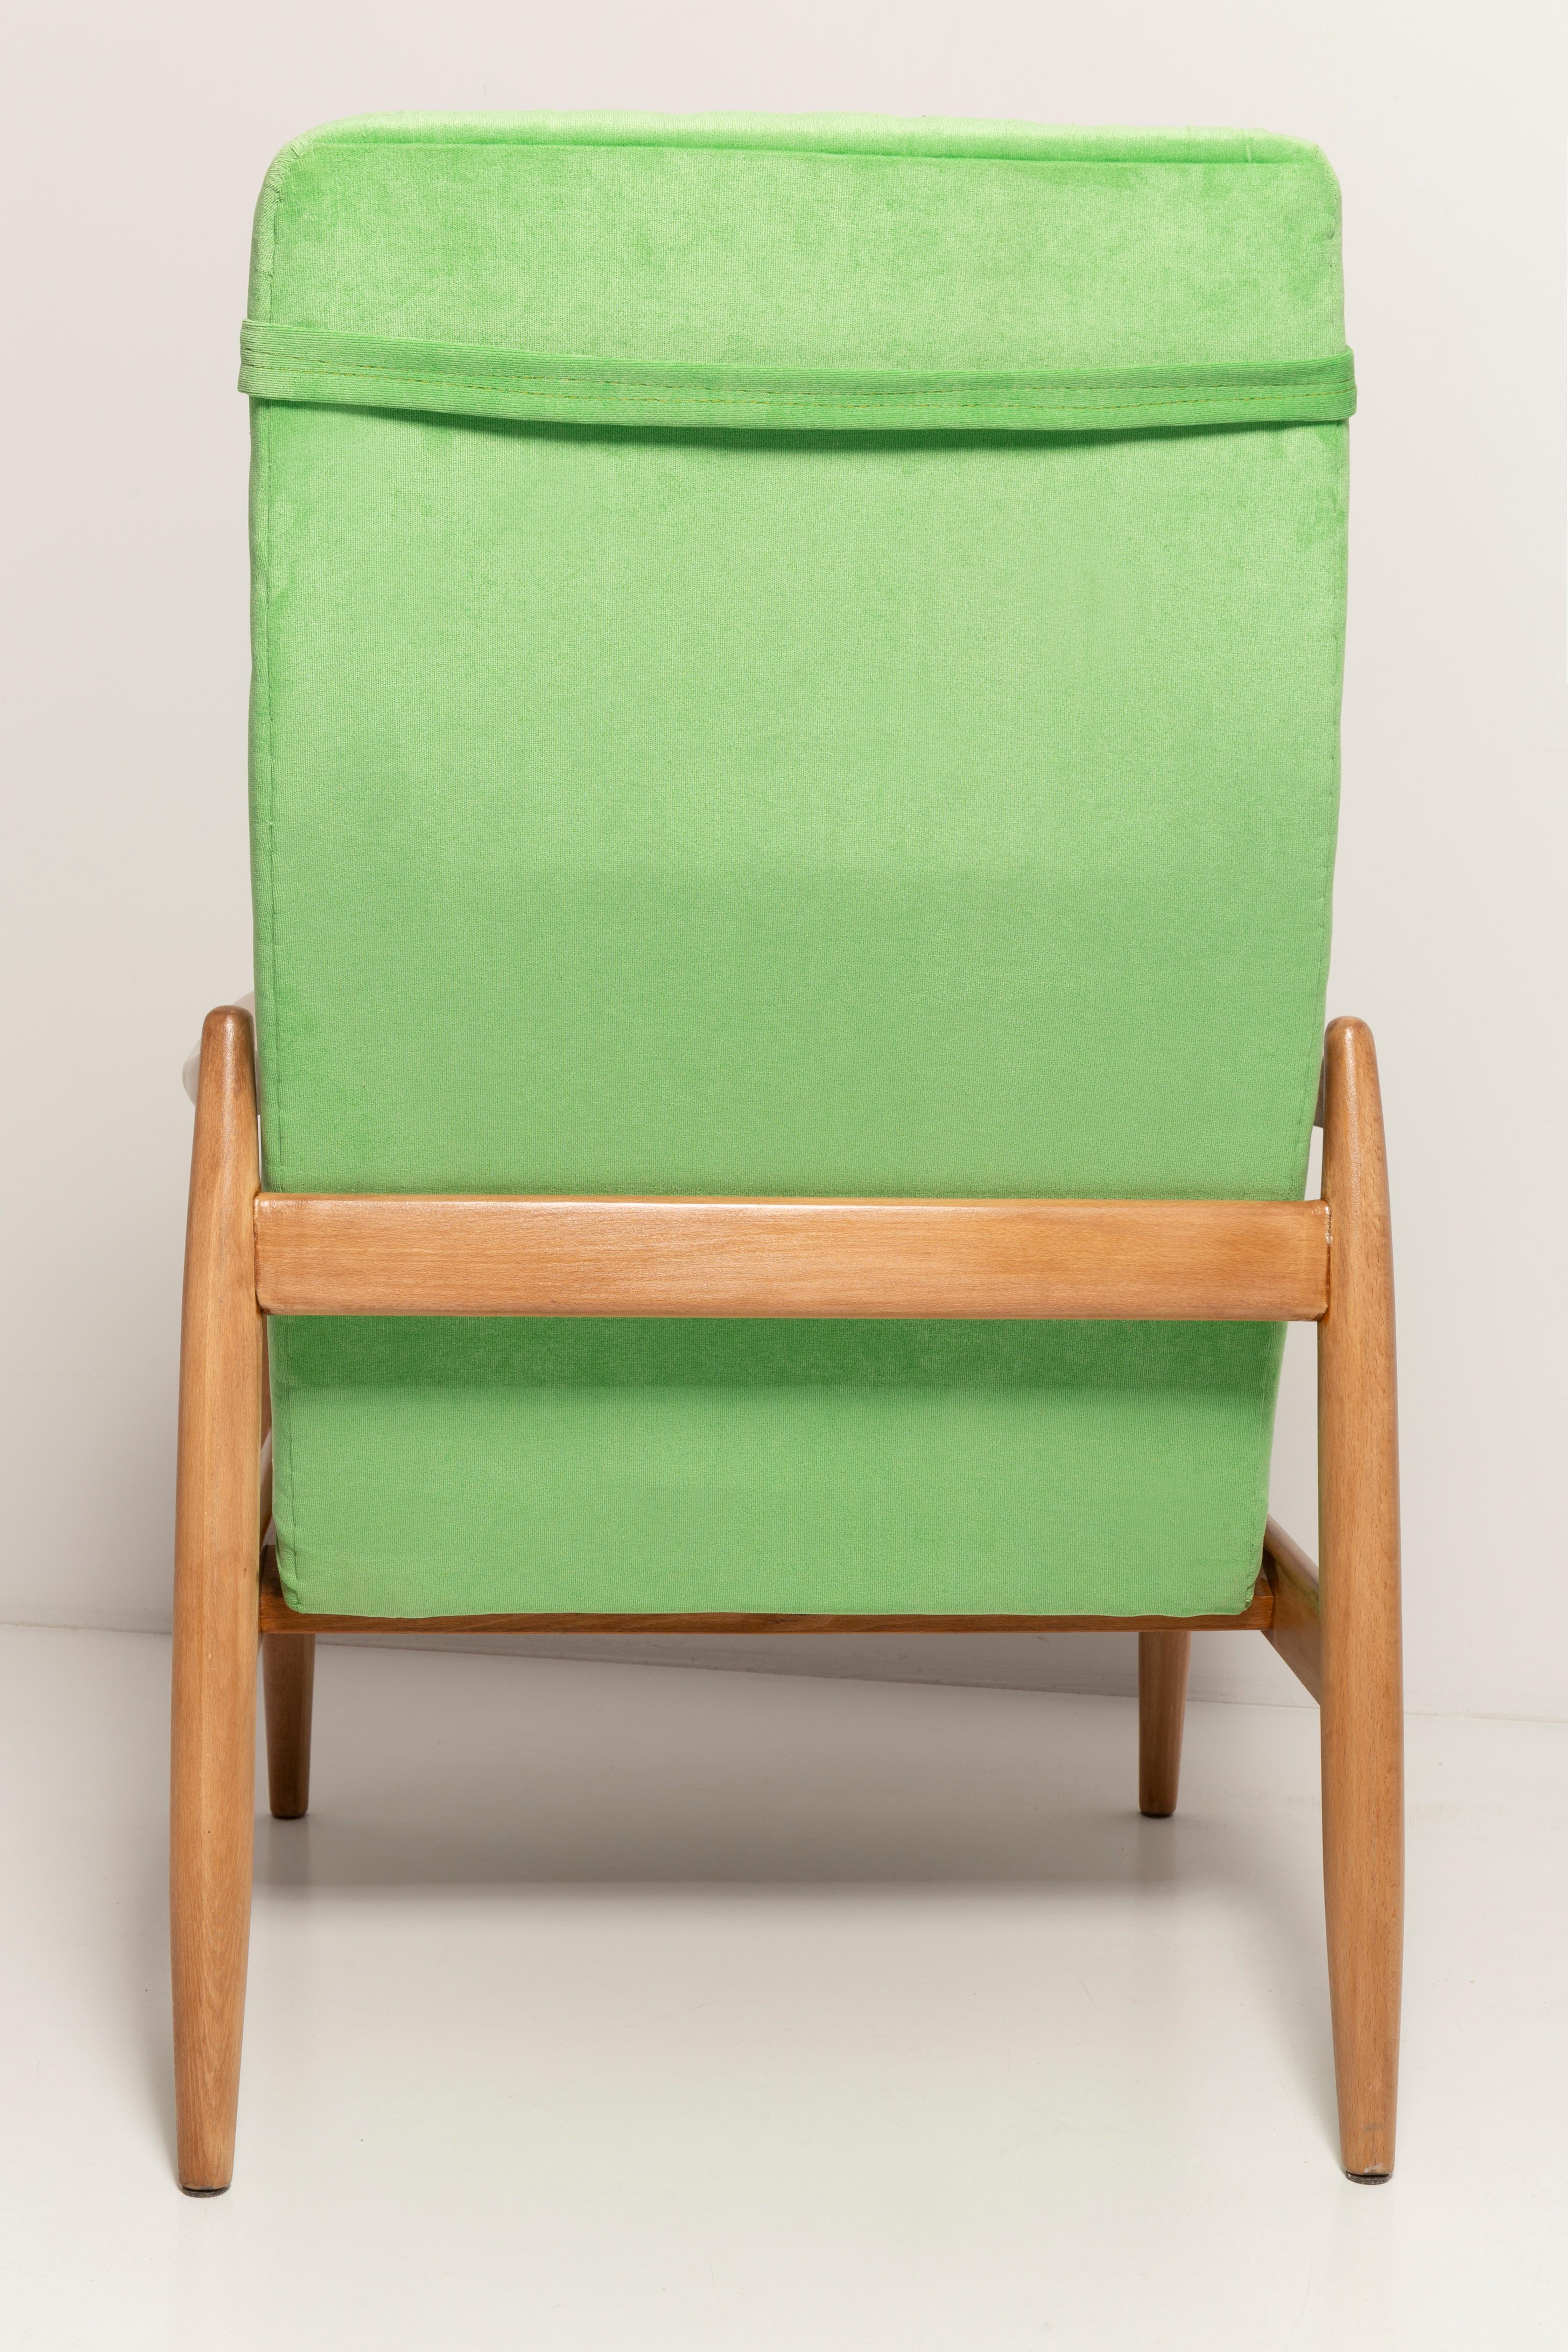 Light Lime Green Velvet Armchair, GFM-64 High, Edmund Homa, 1960s For Sale 6